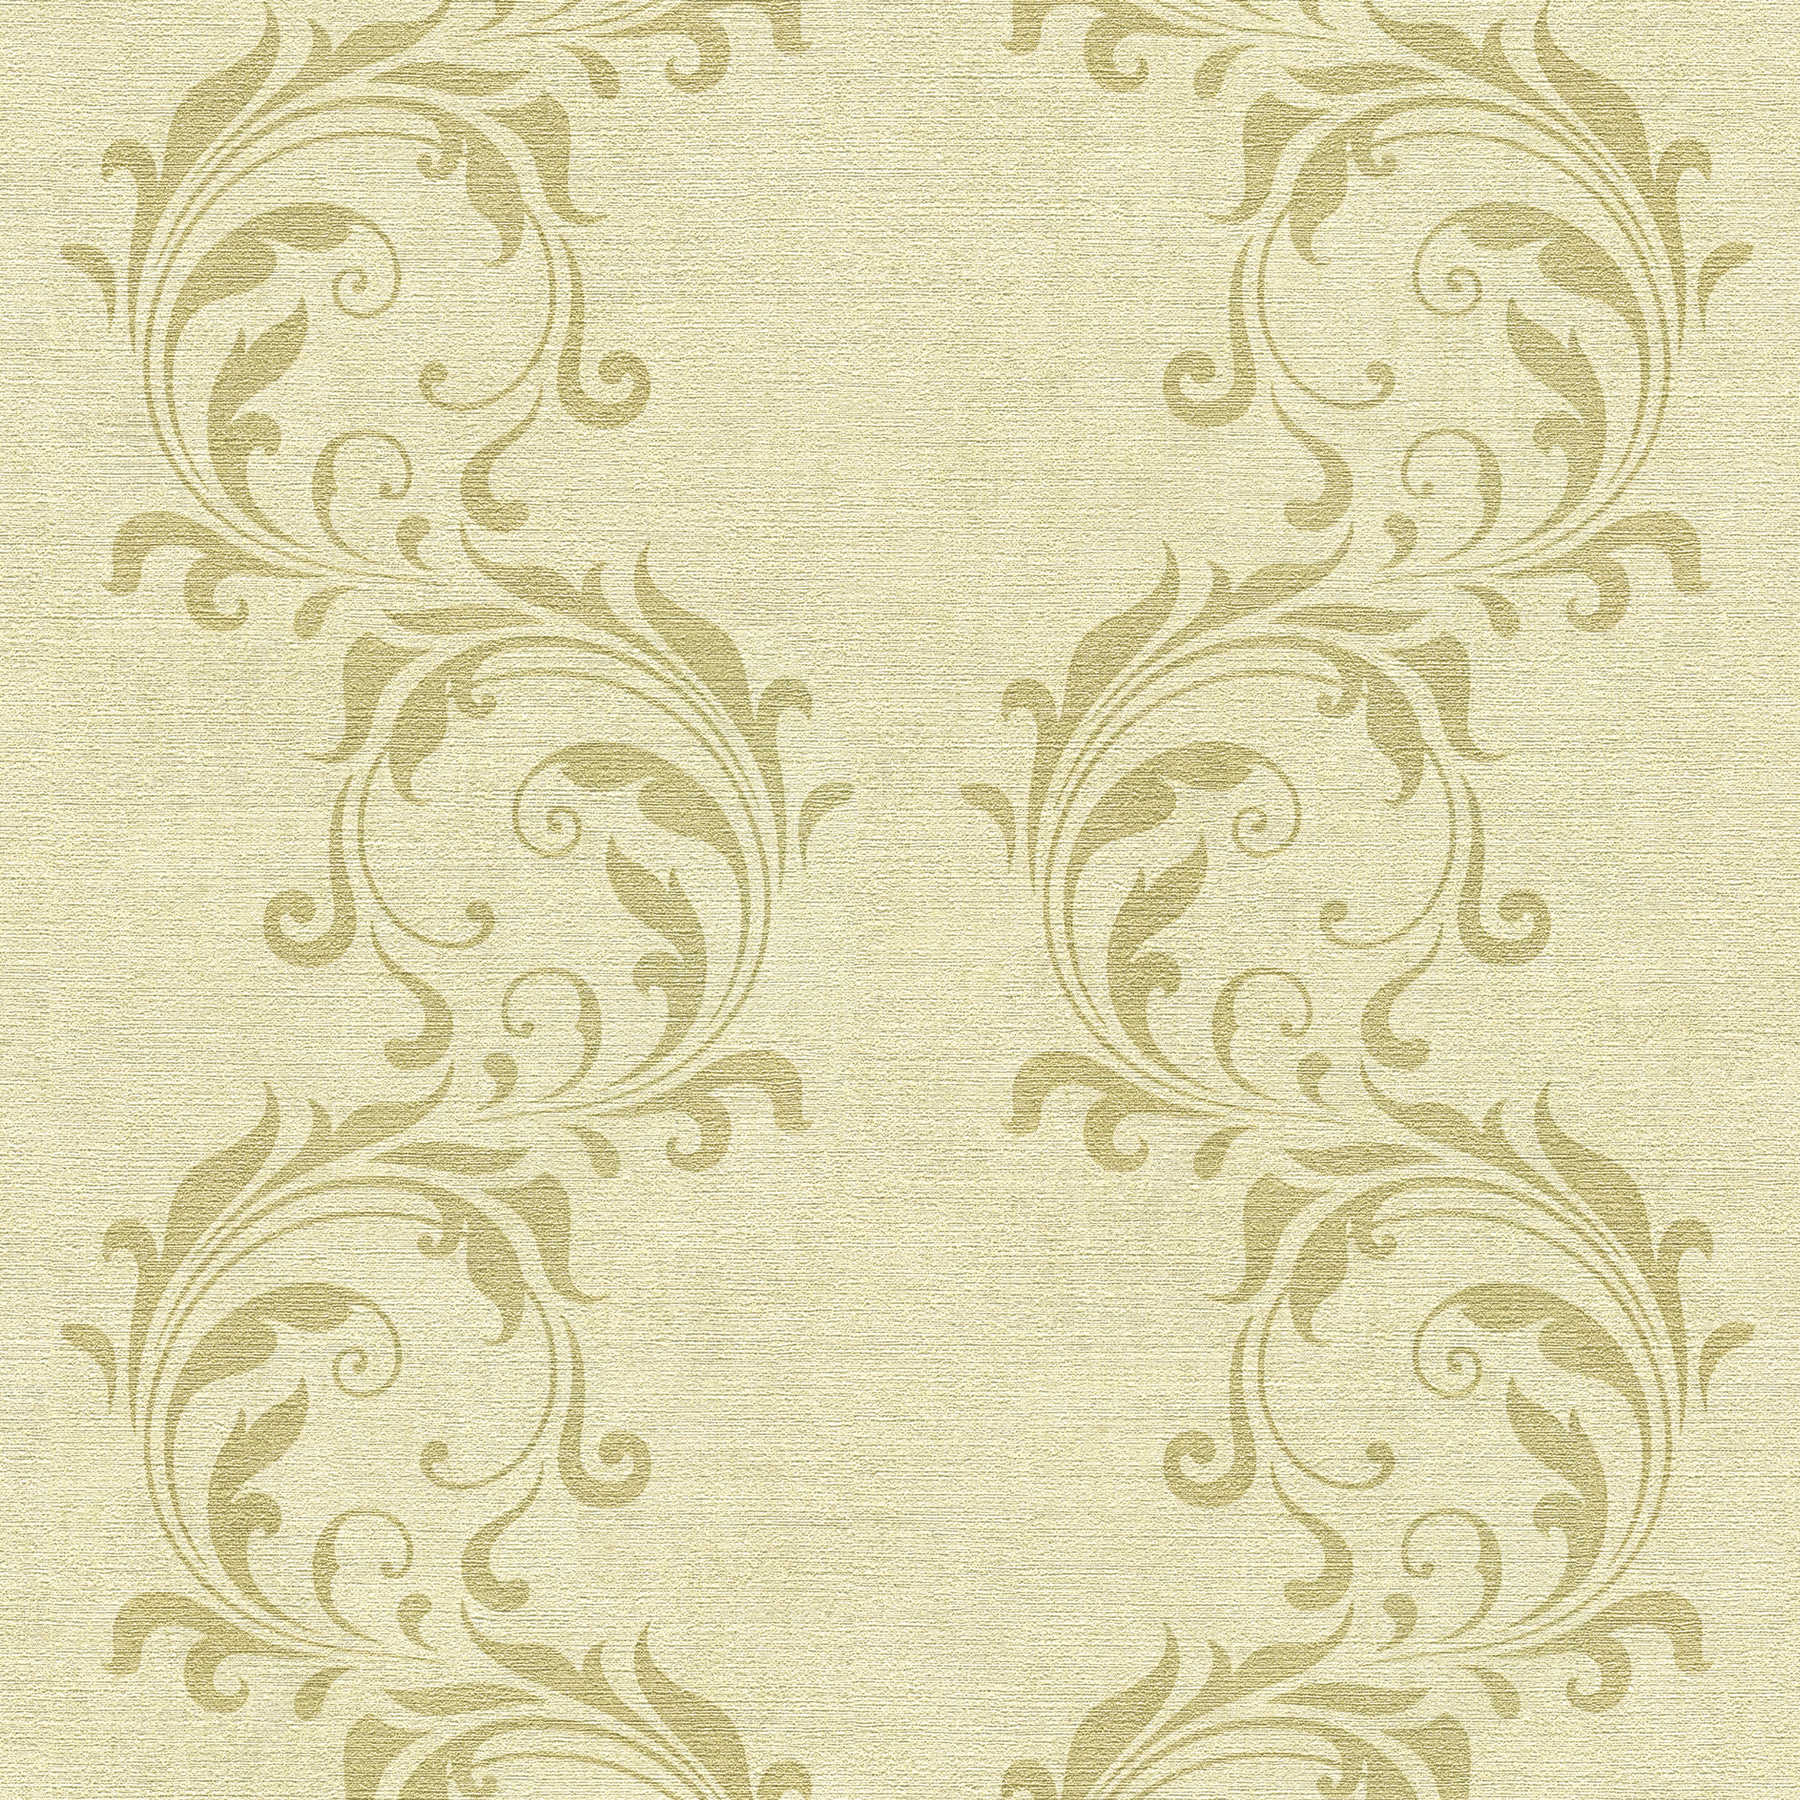 Wallpaper with baroque tendrils pattern & texture effect - Beige, Metallic
